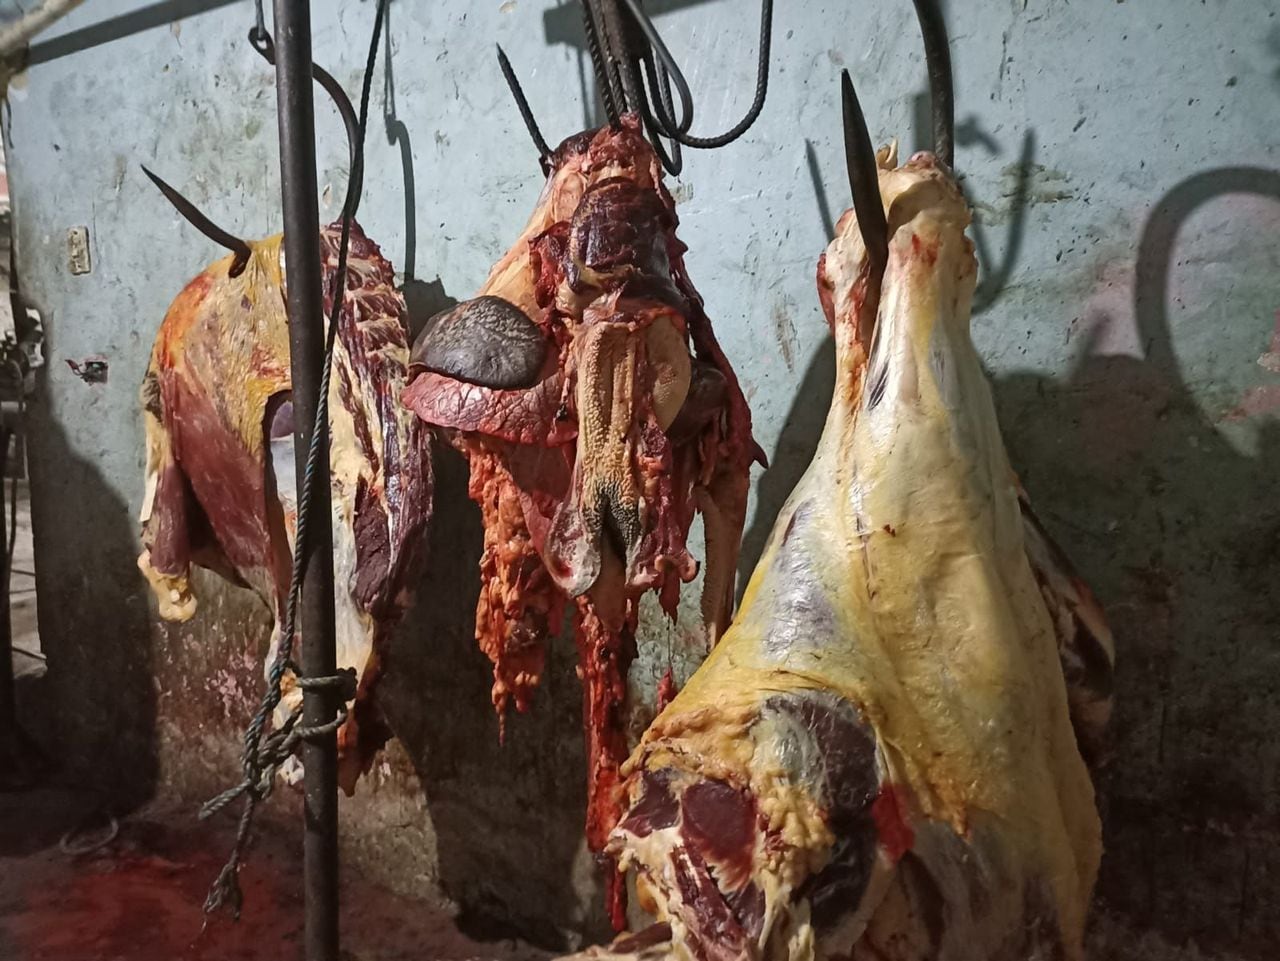 Operativos en Ciudad Bolívar establecieron que la carne incautada estaba en pésimas condiciones de salubridad y pudo ocasionar afectaciones a la salud.